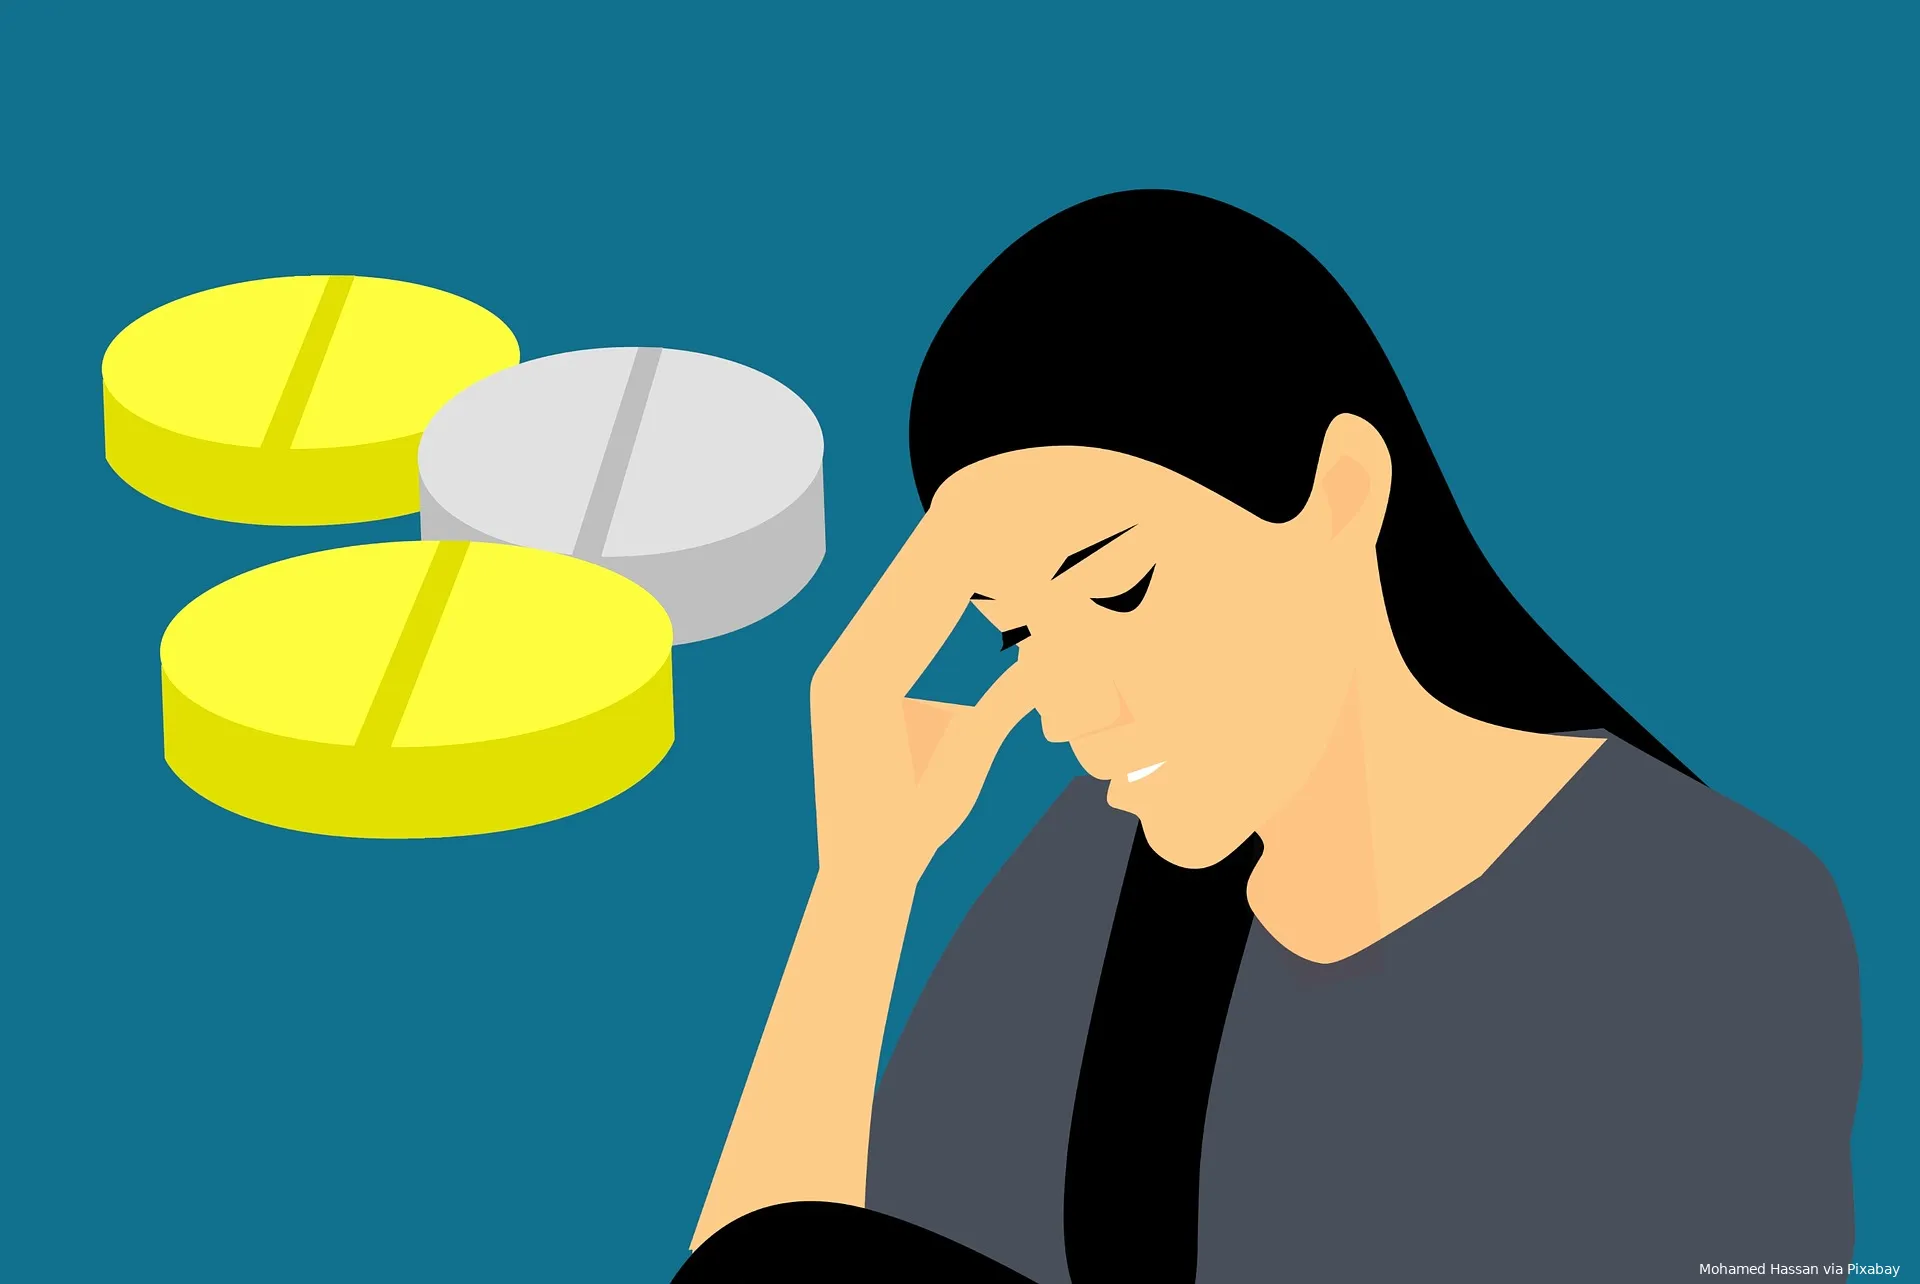 headache 3660963 1920 hoofdpijn migraine medicijnen mohamed hassan via pixabay